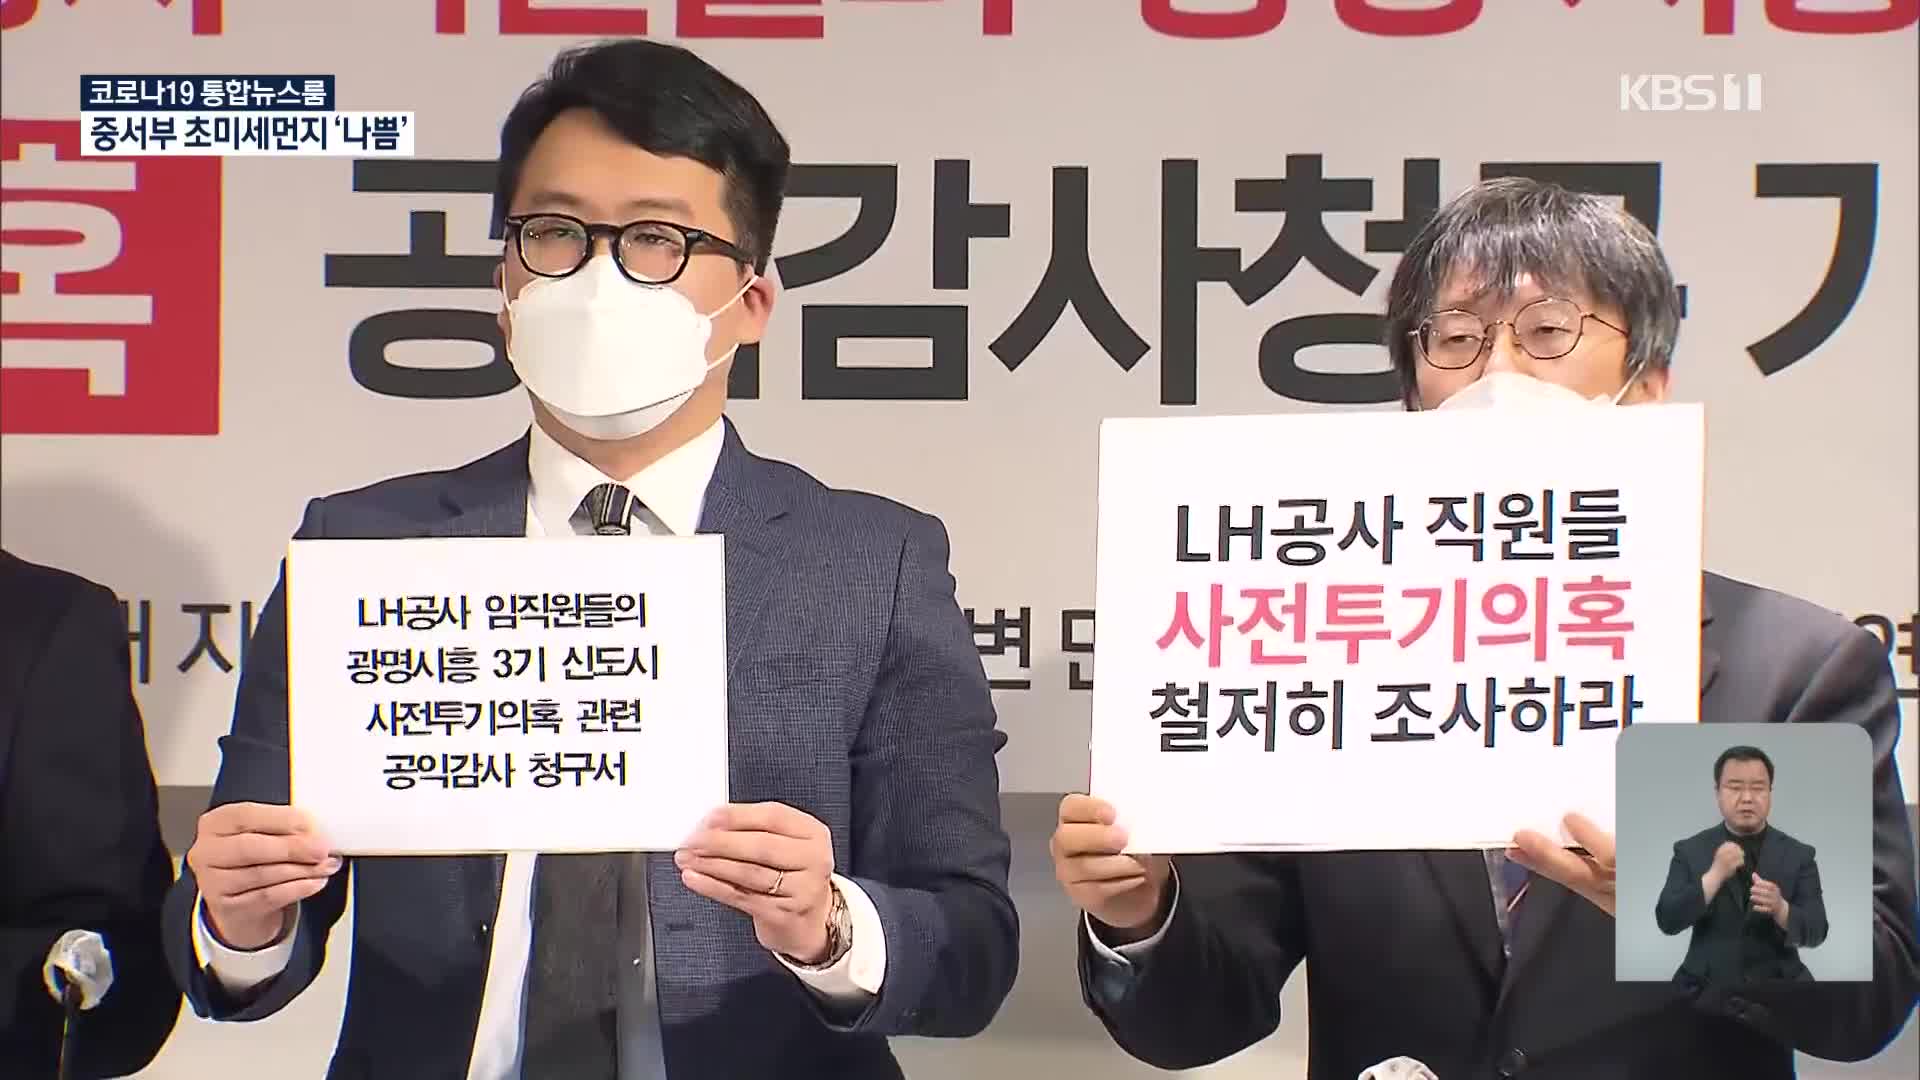 ‘신도시 땅 투기 의혹’ 1차 조사 결과 오늘 발표